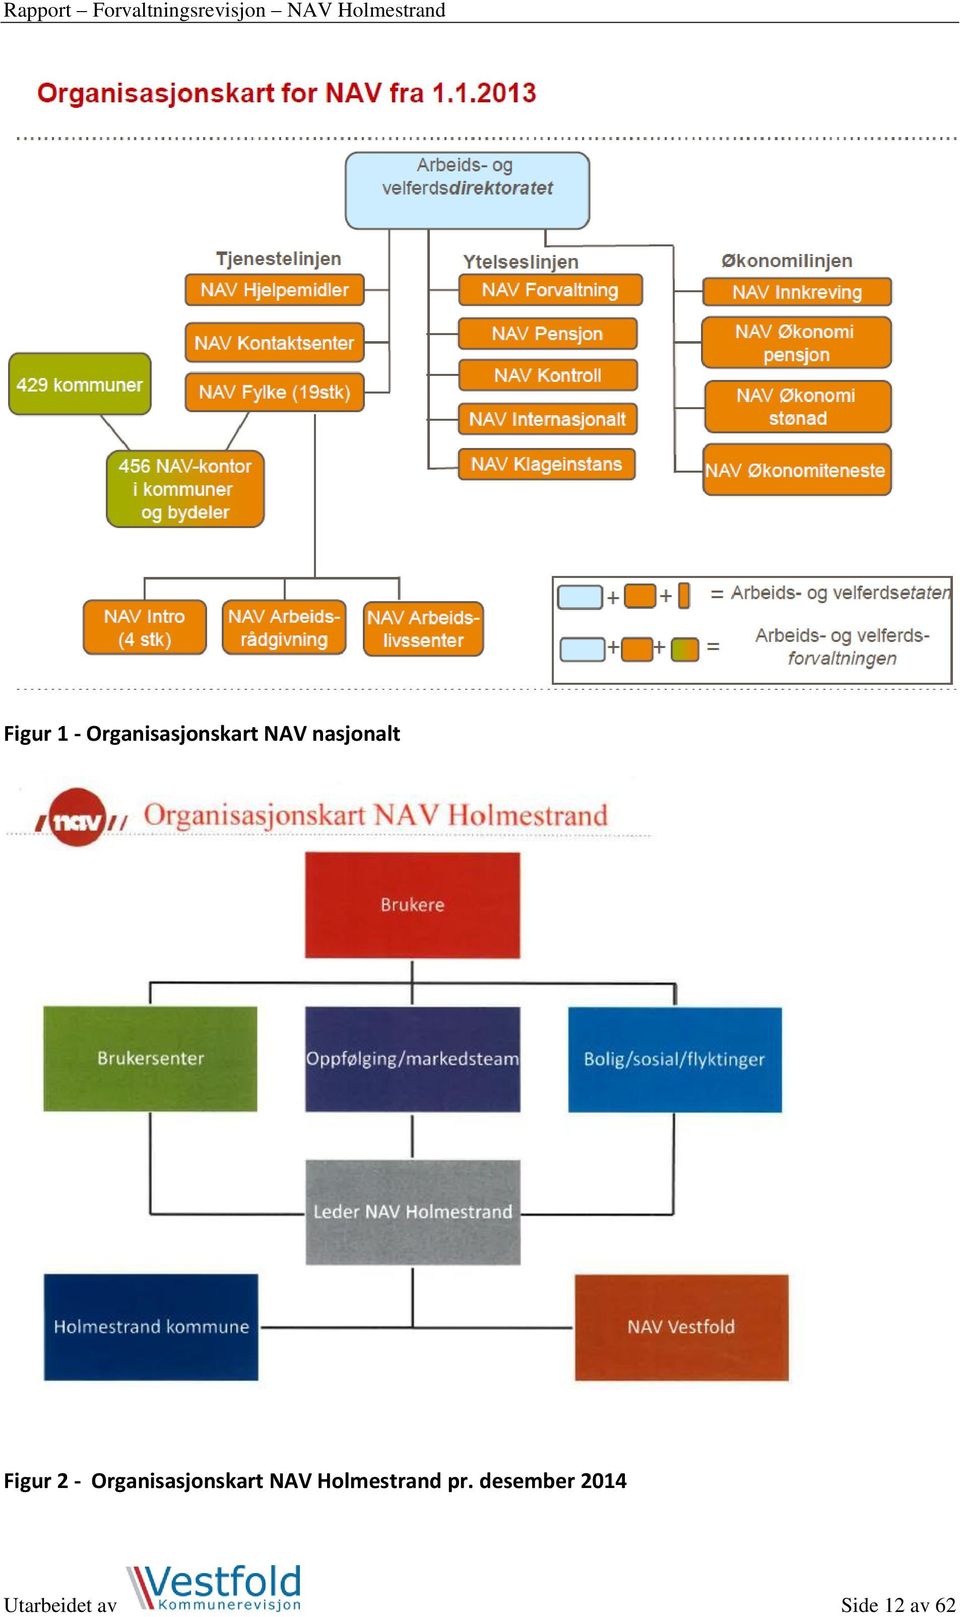 Organisasjonskart NAV